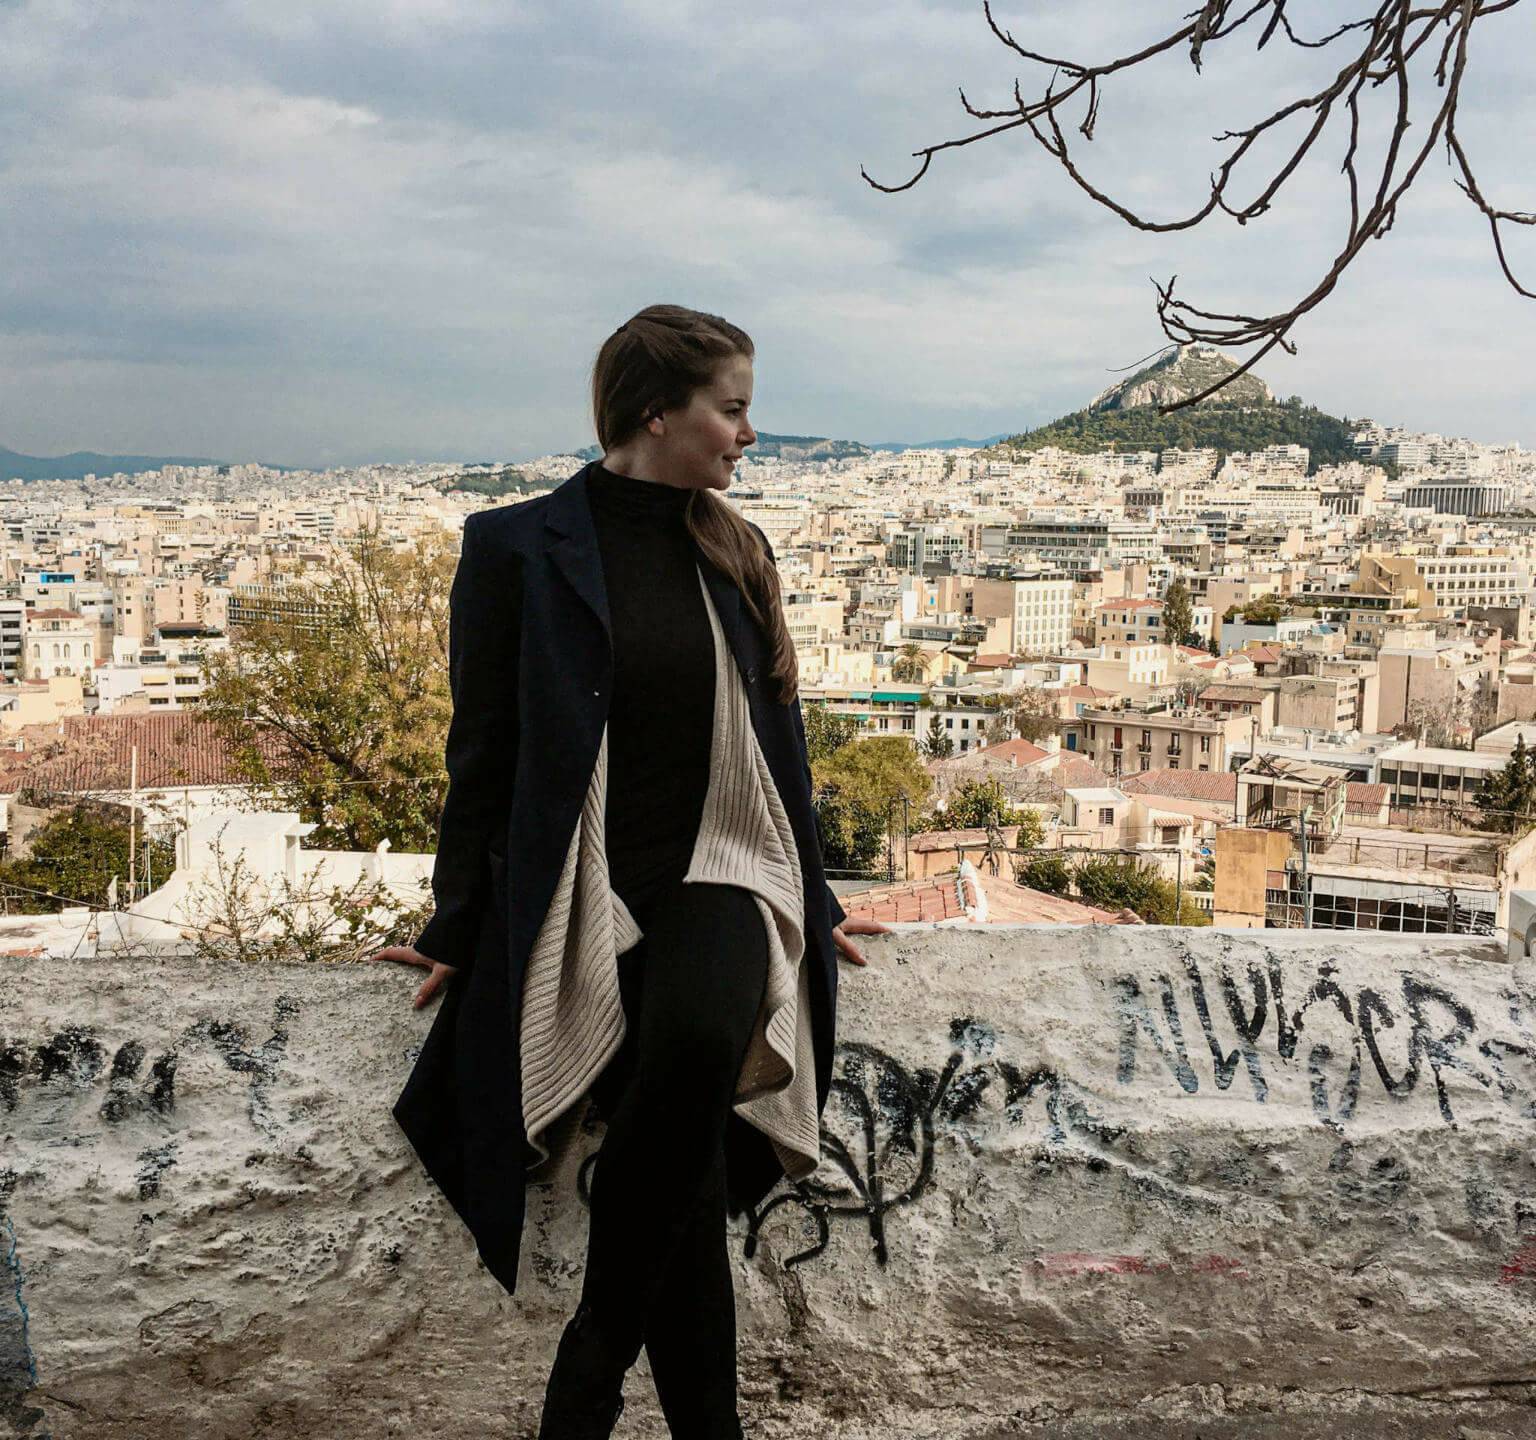 Blick auf die sich weit erstreckende Hauptstadt Athen und die Akropolis von Anafiotika aus, Reisebloggerin Franziska posiert vor der Dächerflut auf einer Mauer sitzend.